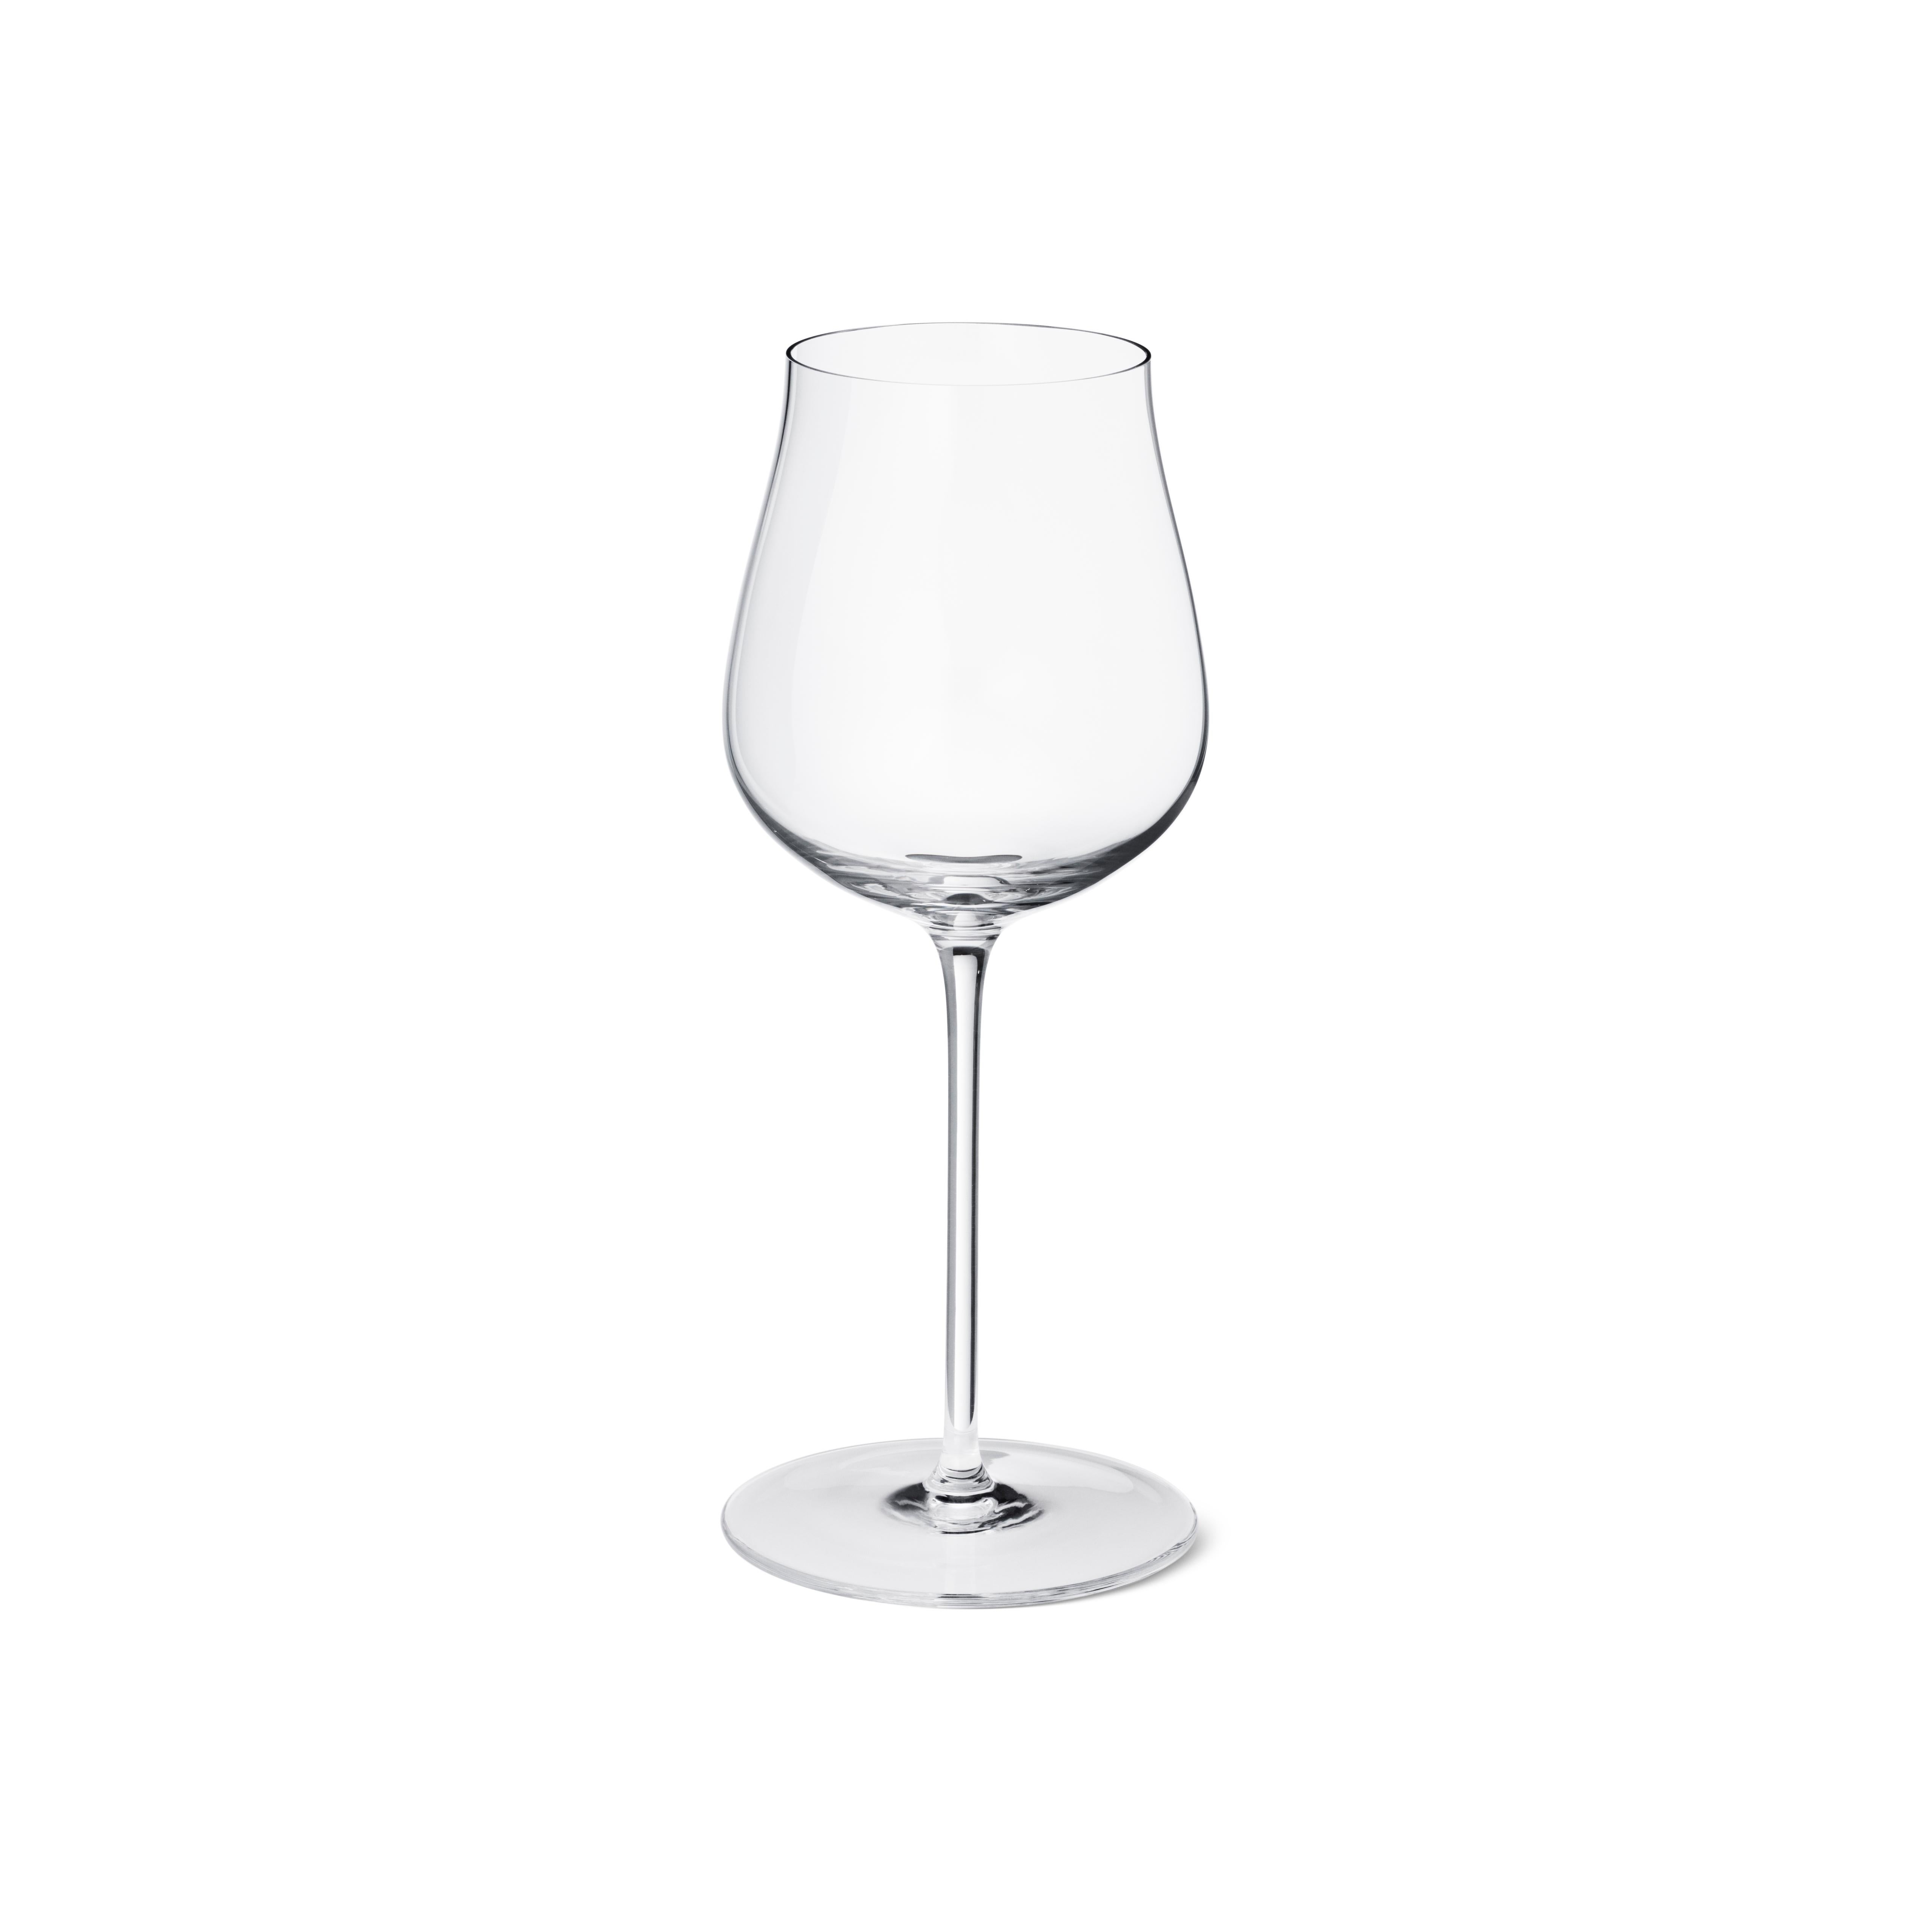 Le bon vin est encore meilleur lorsqu'il est servi dans de beaux verres ! En apportant une touche scandinave au plaisir de siroter du vin blanc frais, ces élégants verres à vin blanc en cristal sans plomb sont superbes à regarder mais aussi faciles